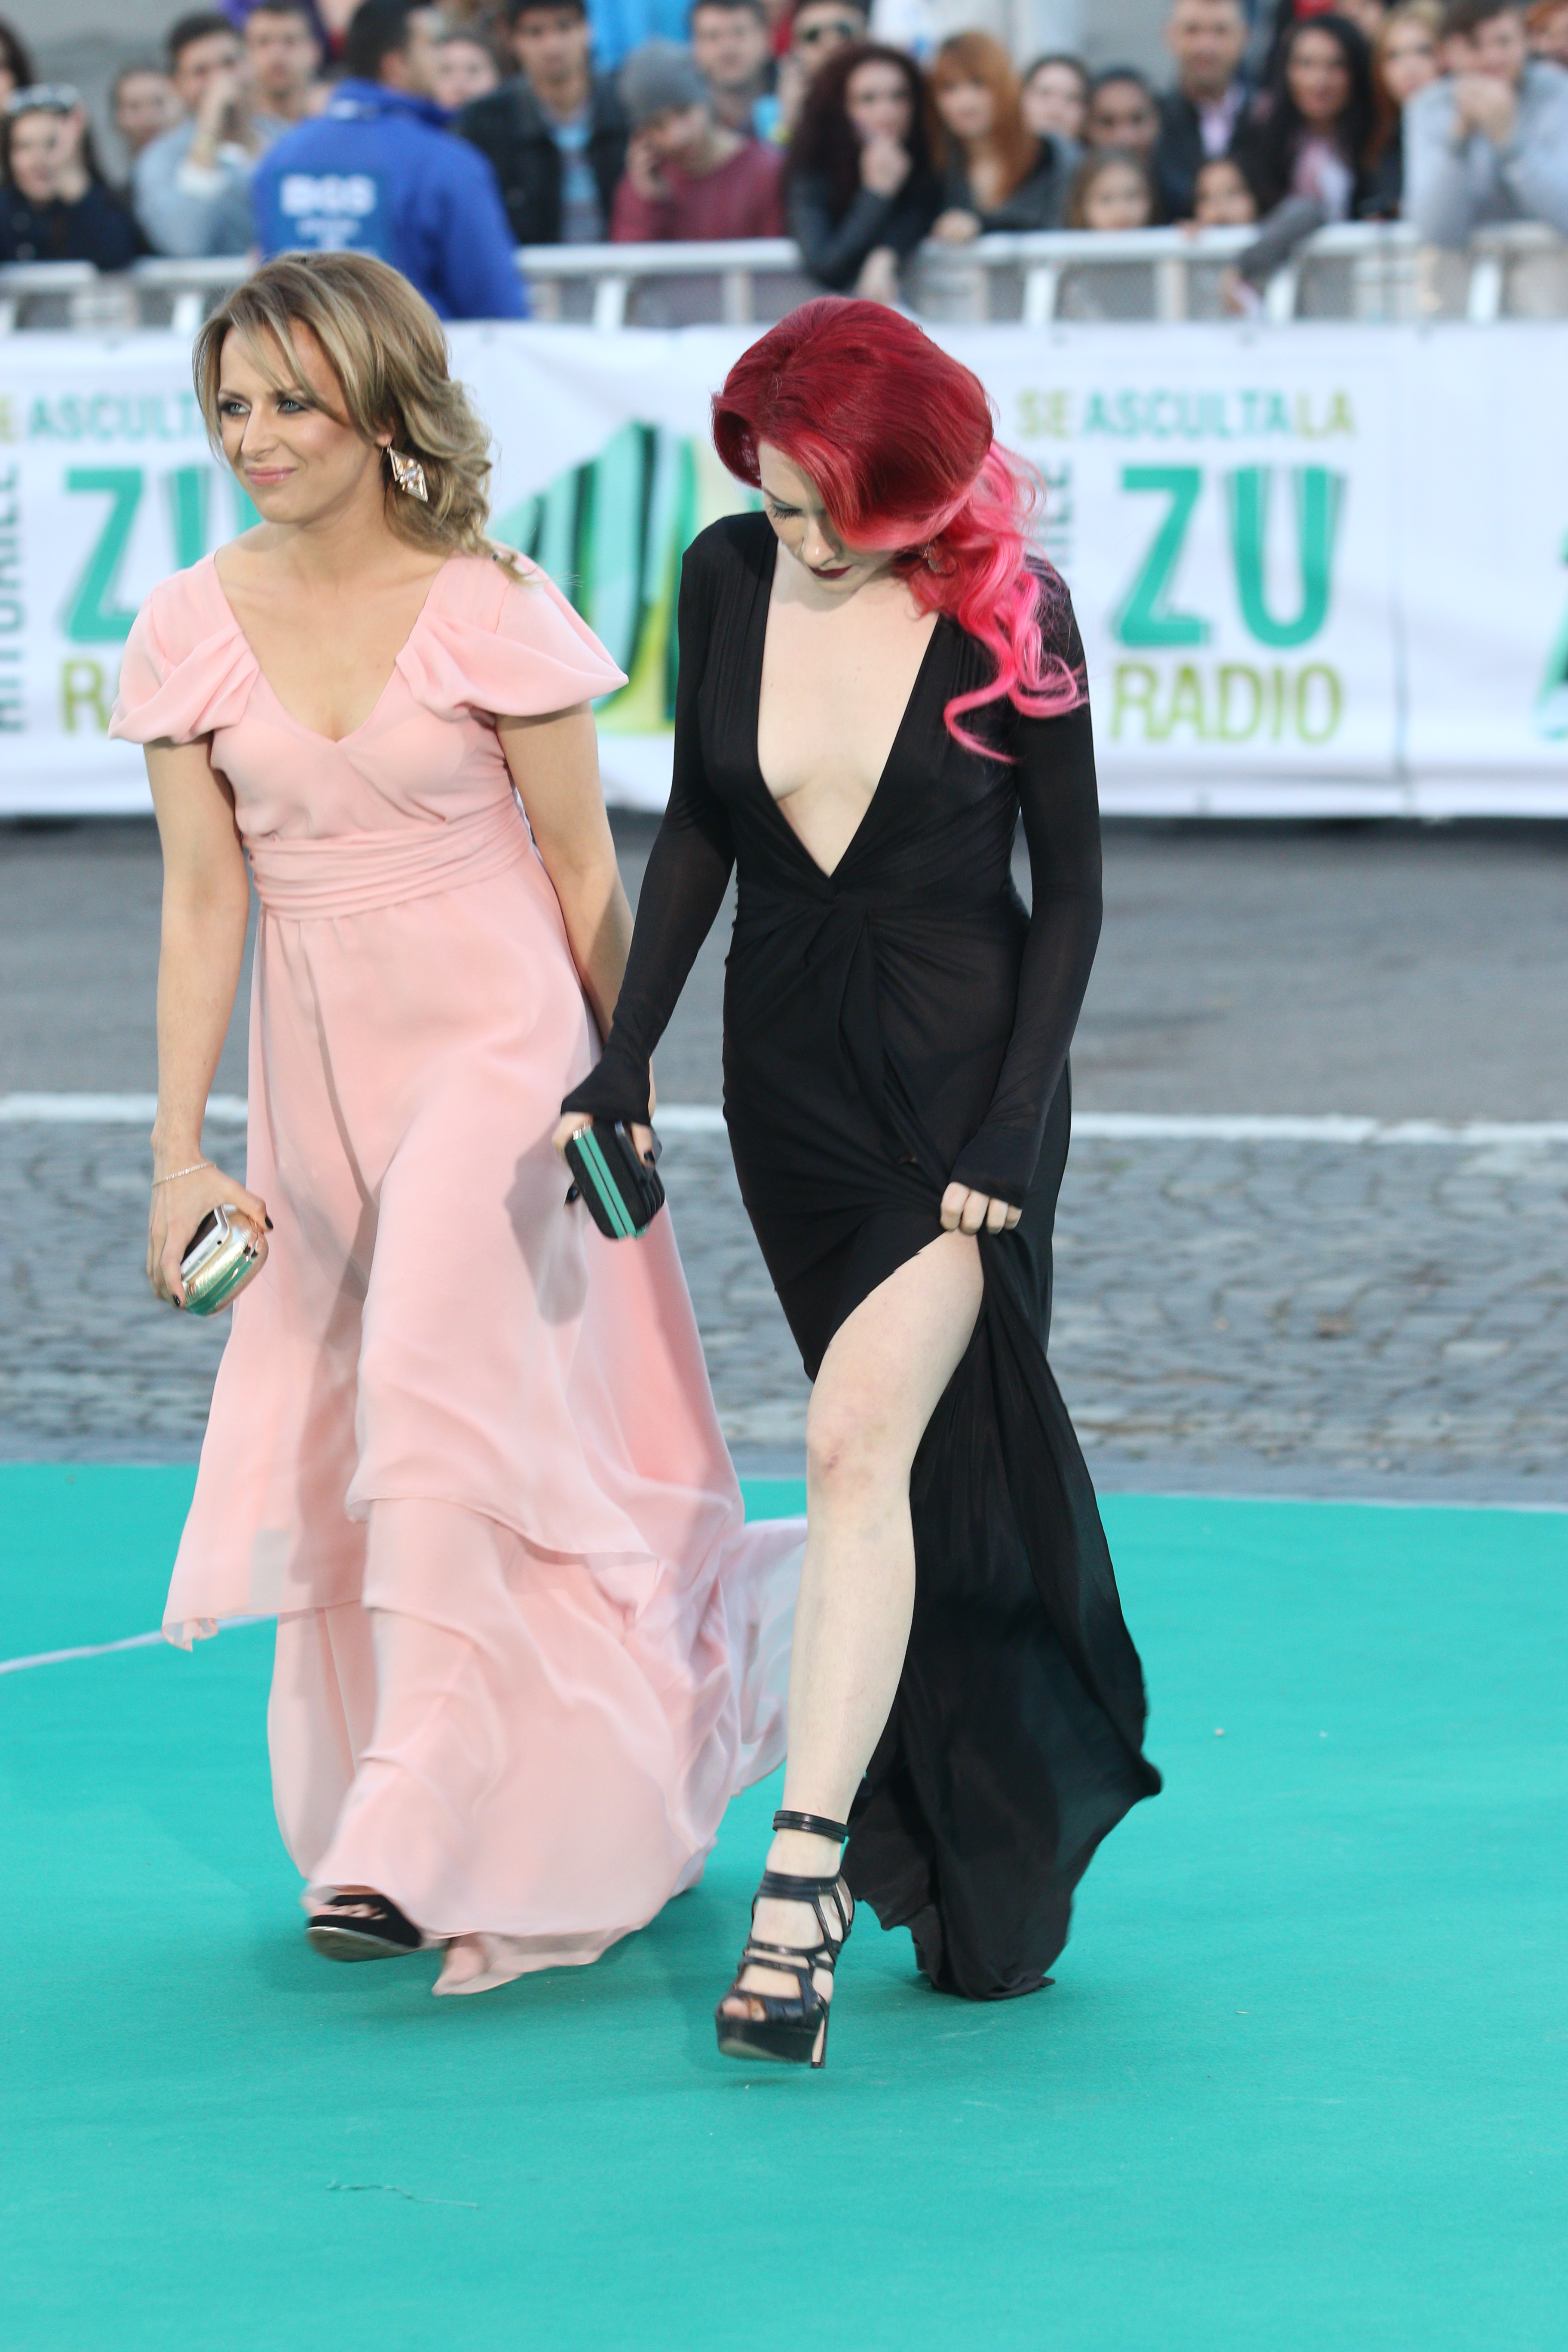 Fetele de la RedBlonde au devenit celebre prin emisiunea lui Cătălin Măruţă